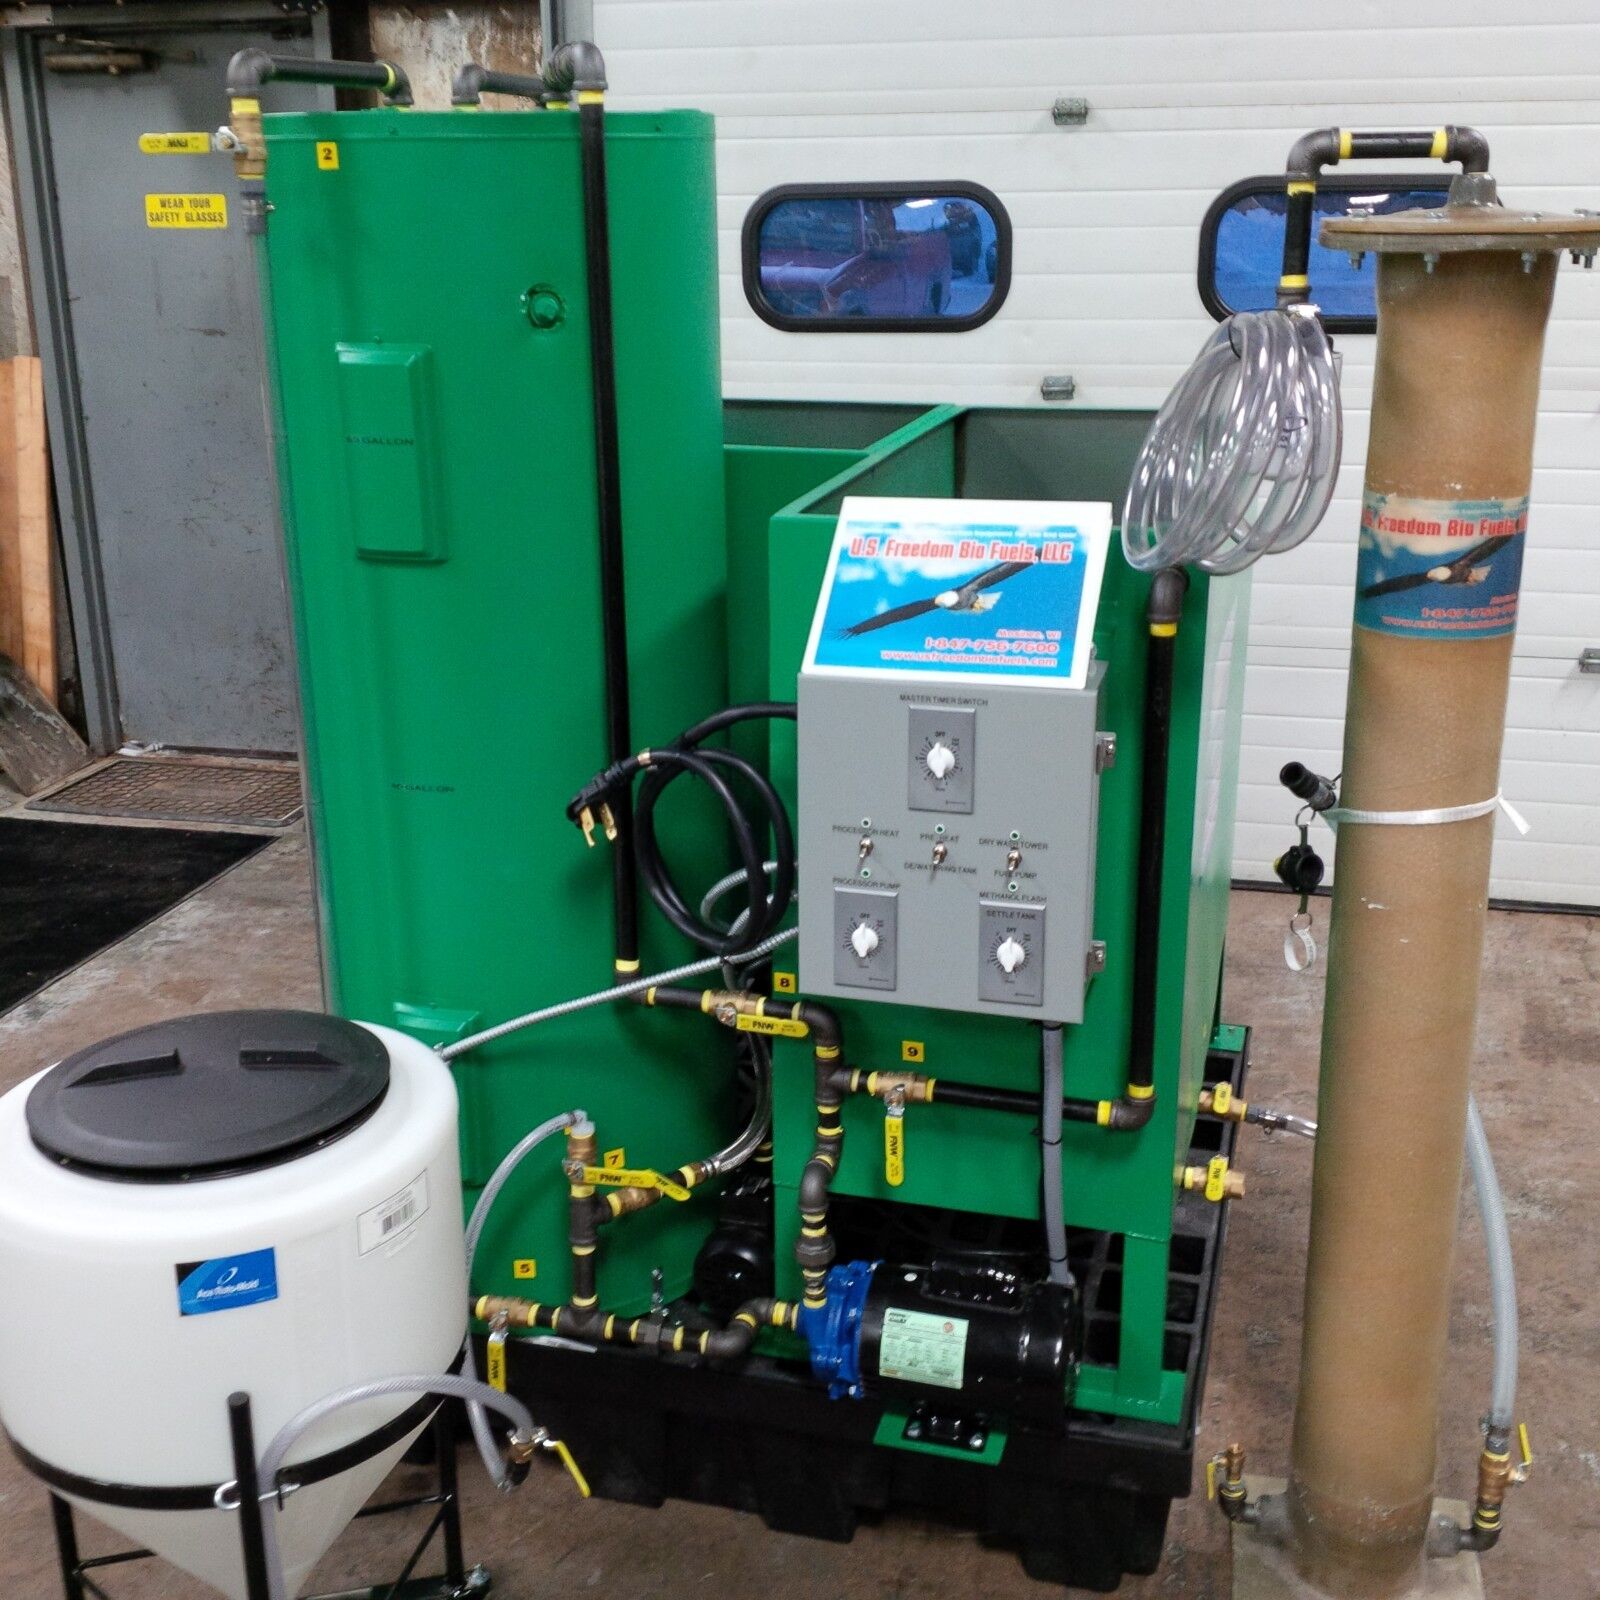 U.S. Freedom Bio Fuels,LLC Commercial Biodiesel Processor W/ Dry Wash Technology